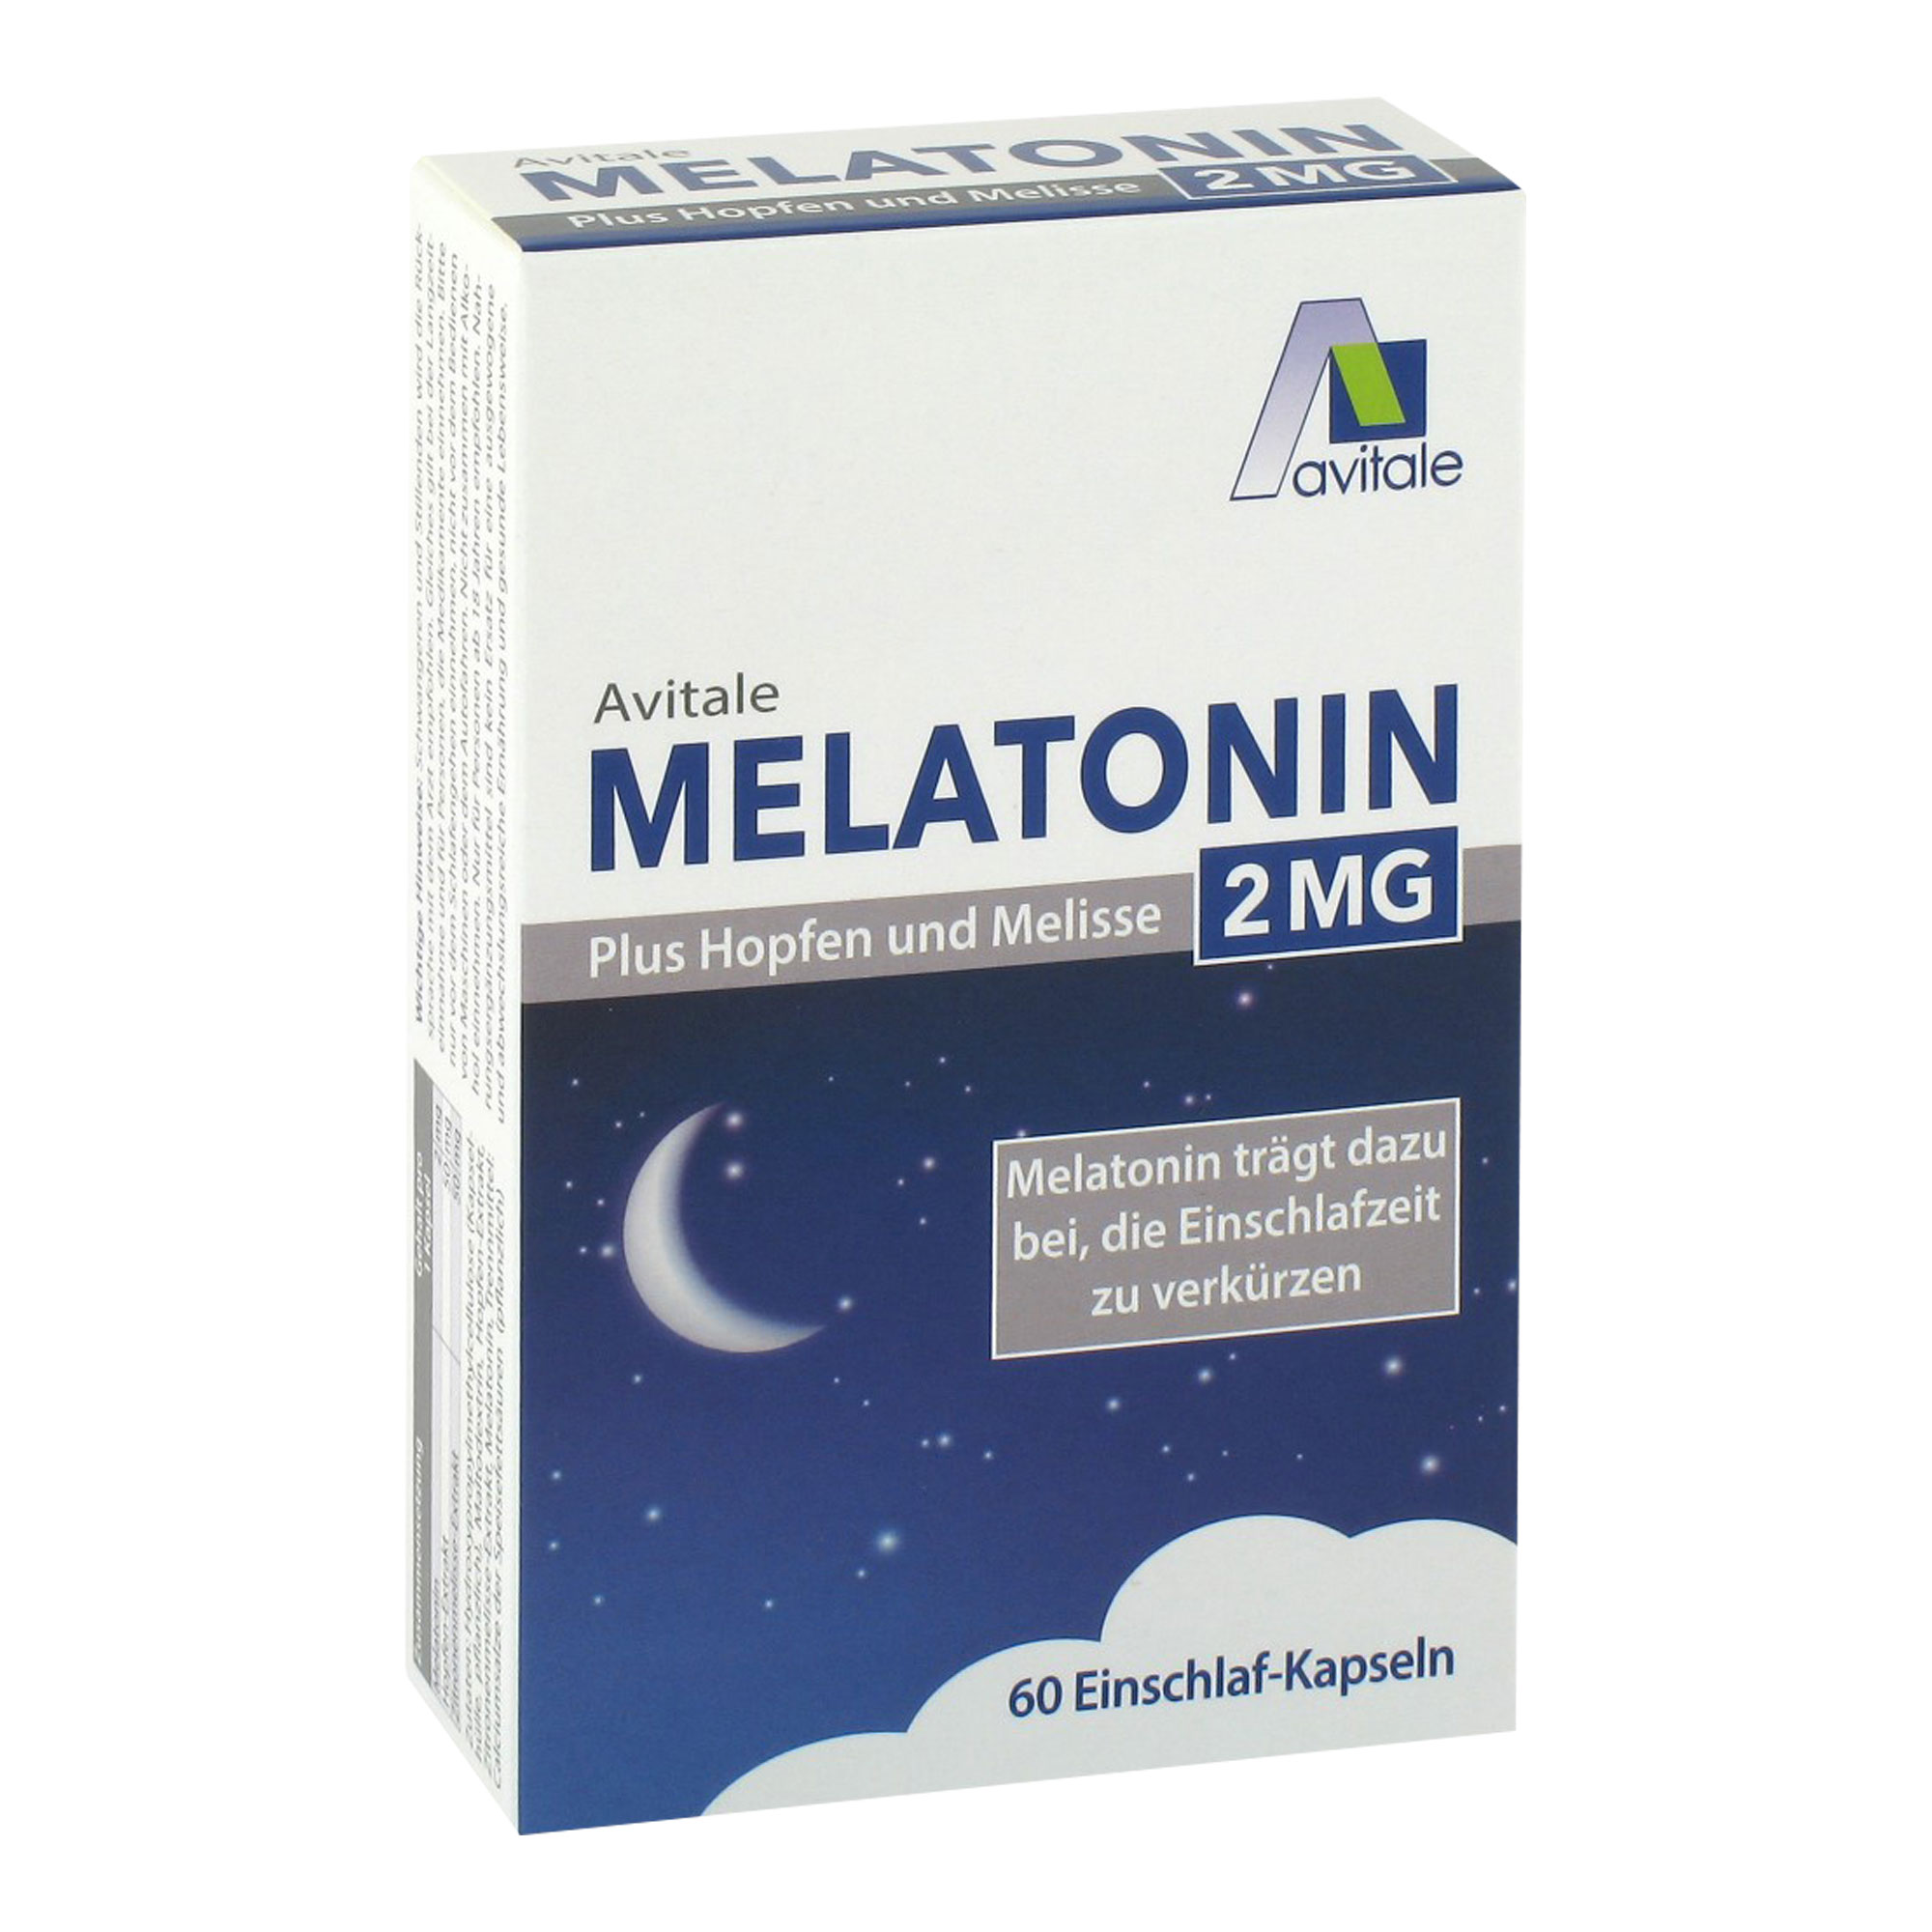 Nahrungsergänzungsmittel mit 2 mg Melatonin, Hopfen- und Zitronenmelisse-Extrakt.